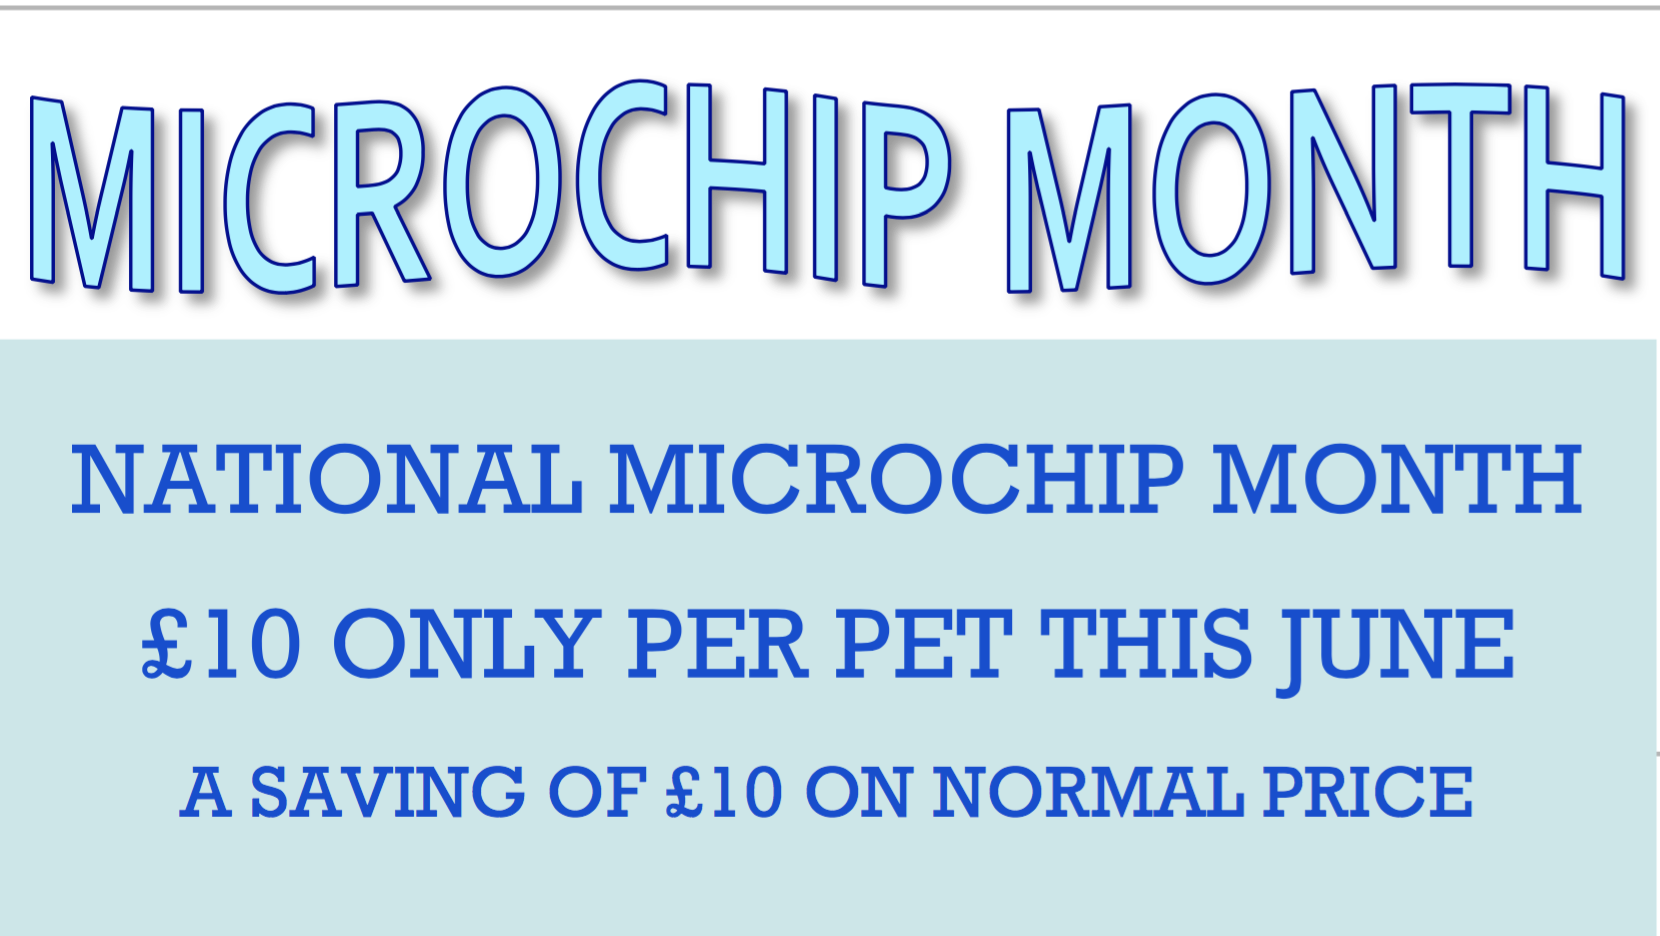 June Offer Microchip